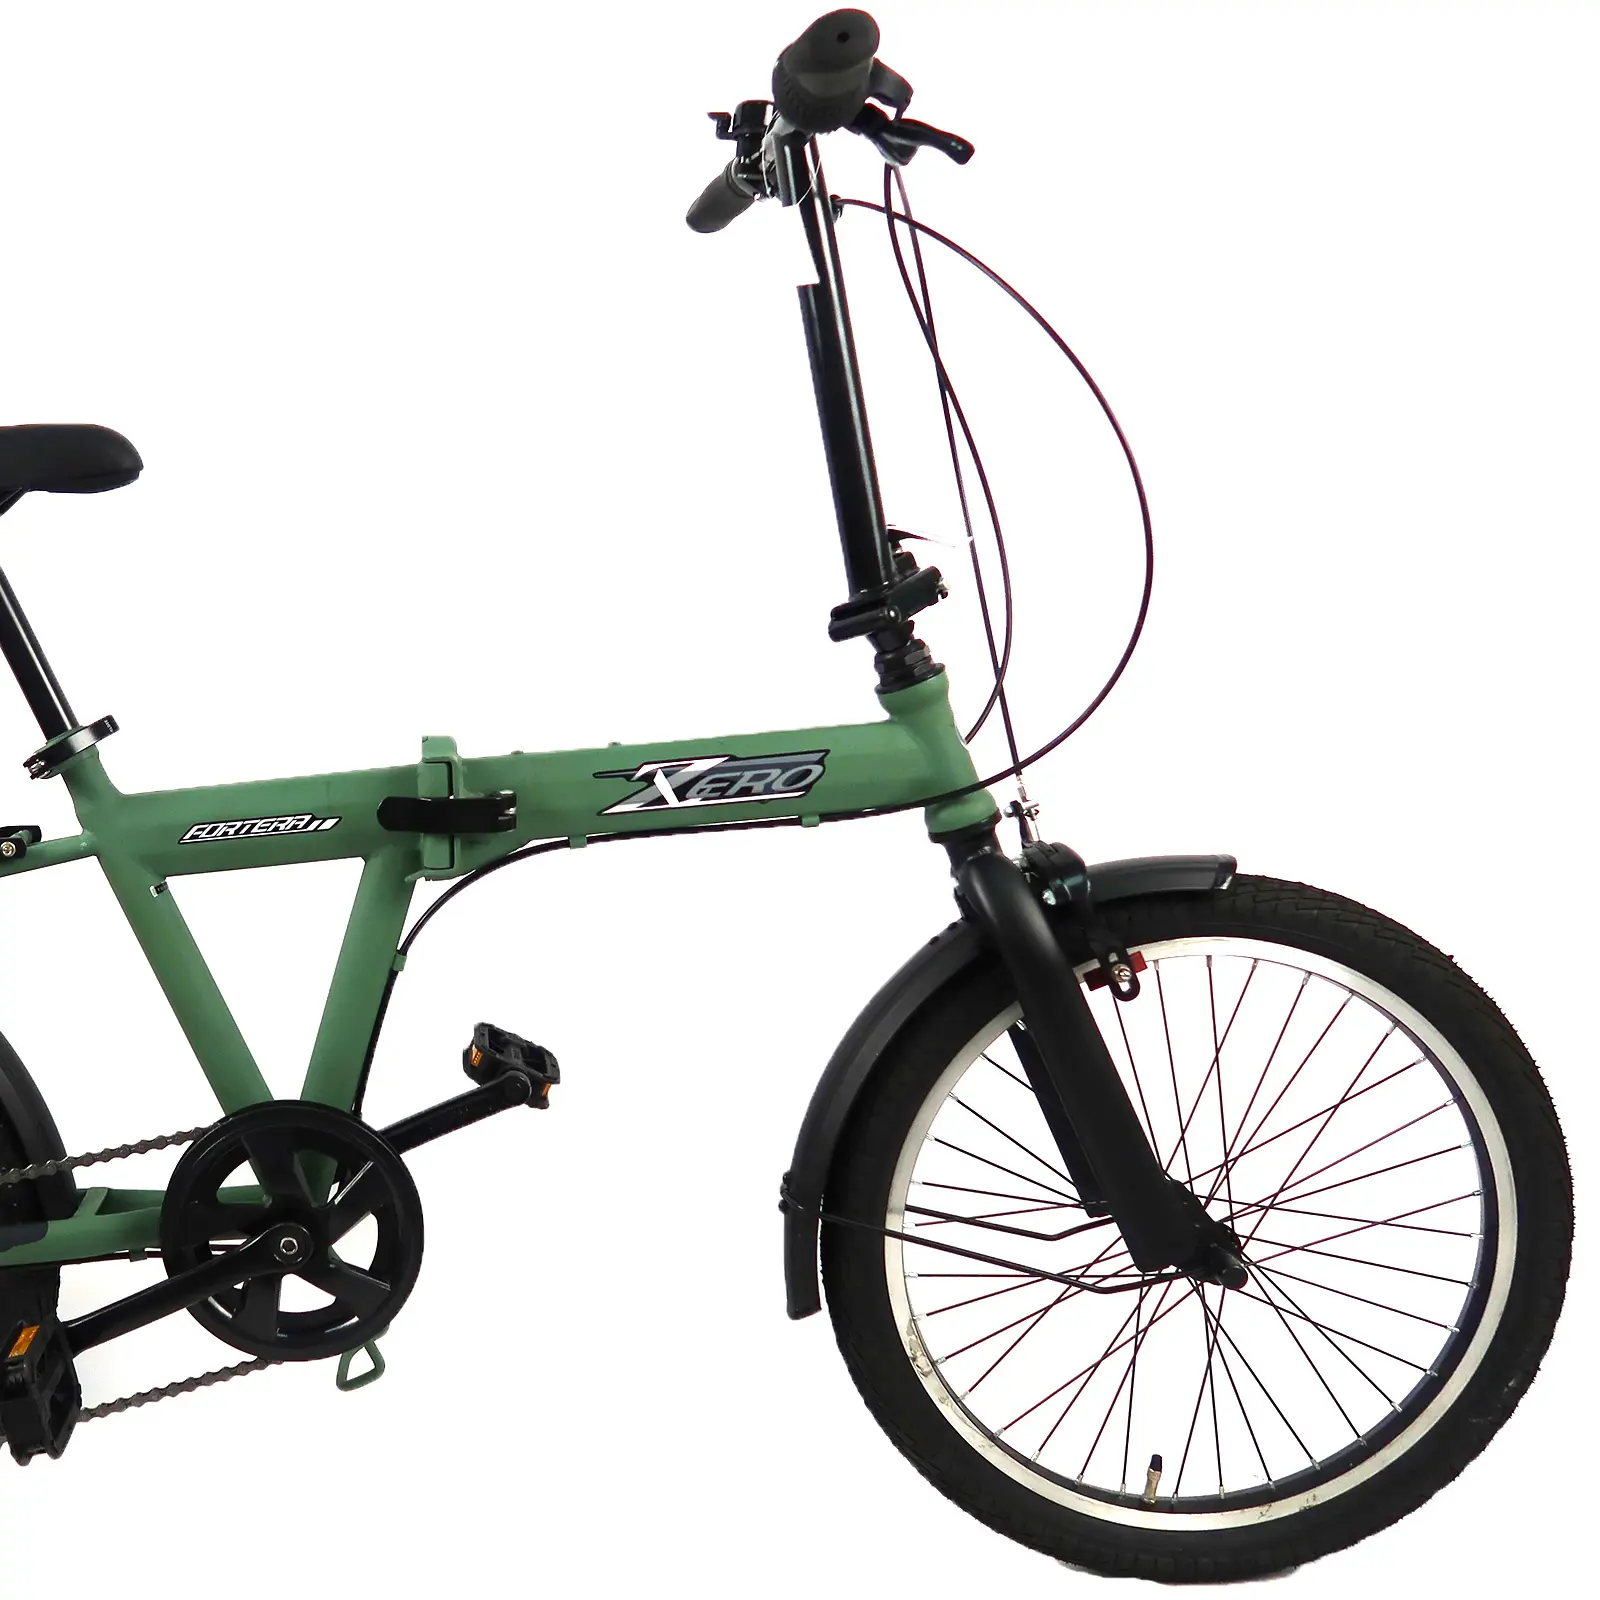 دراجة هوائية خفيفة الوزن 20 بوصة بالشوفير قابلة للطي دراجة للترفيه في المدينة للسفر المدرسي والعمل ويمكن وضعها في حقيبة السيارة